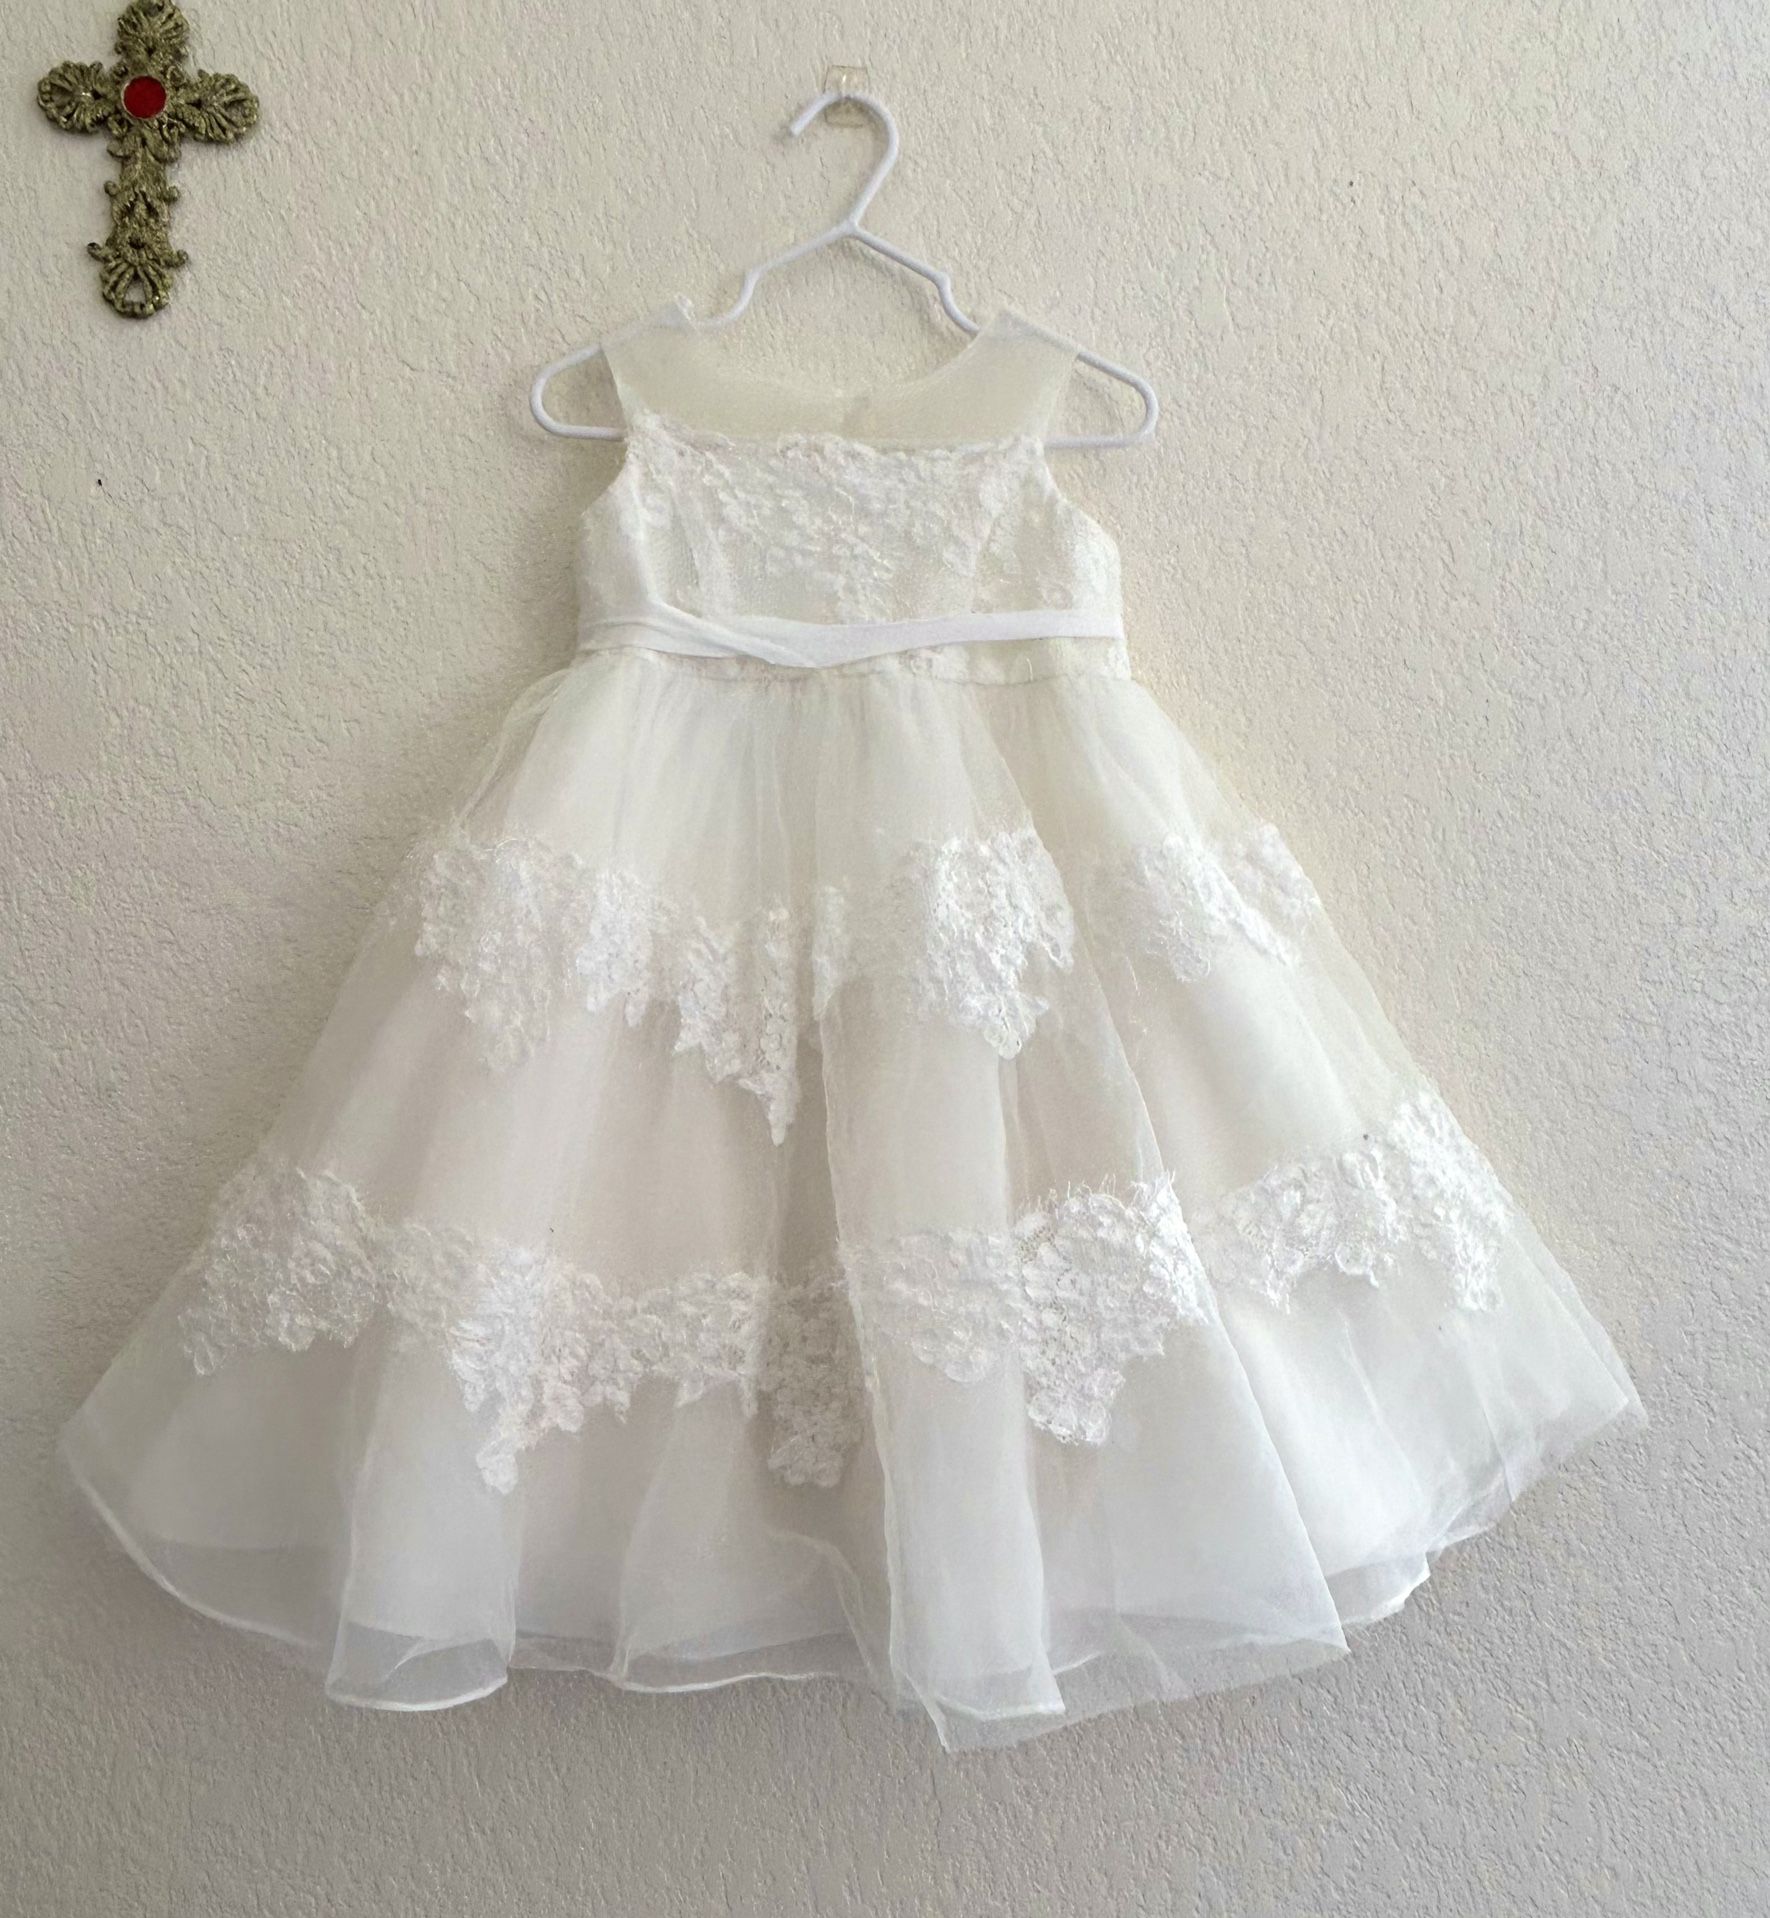 Toddler Girls’ Flower Girl/Easter Dress Size 2T